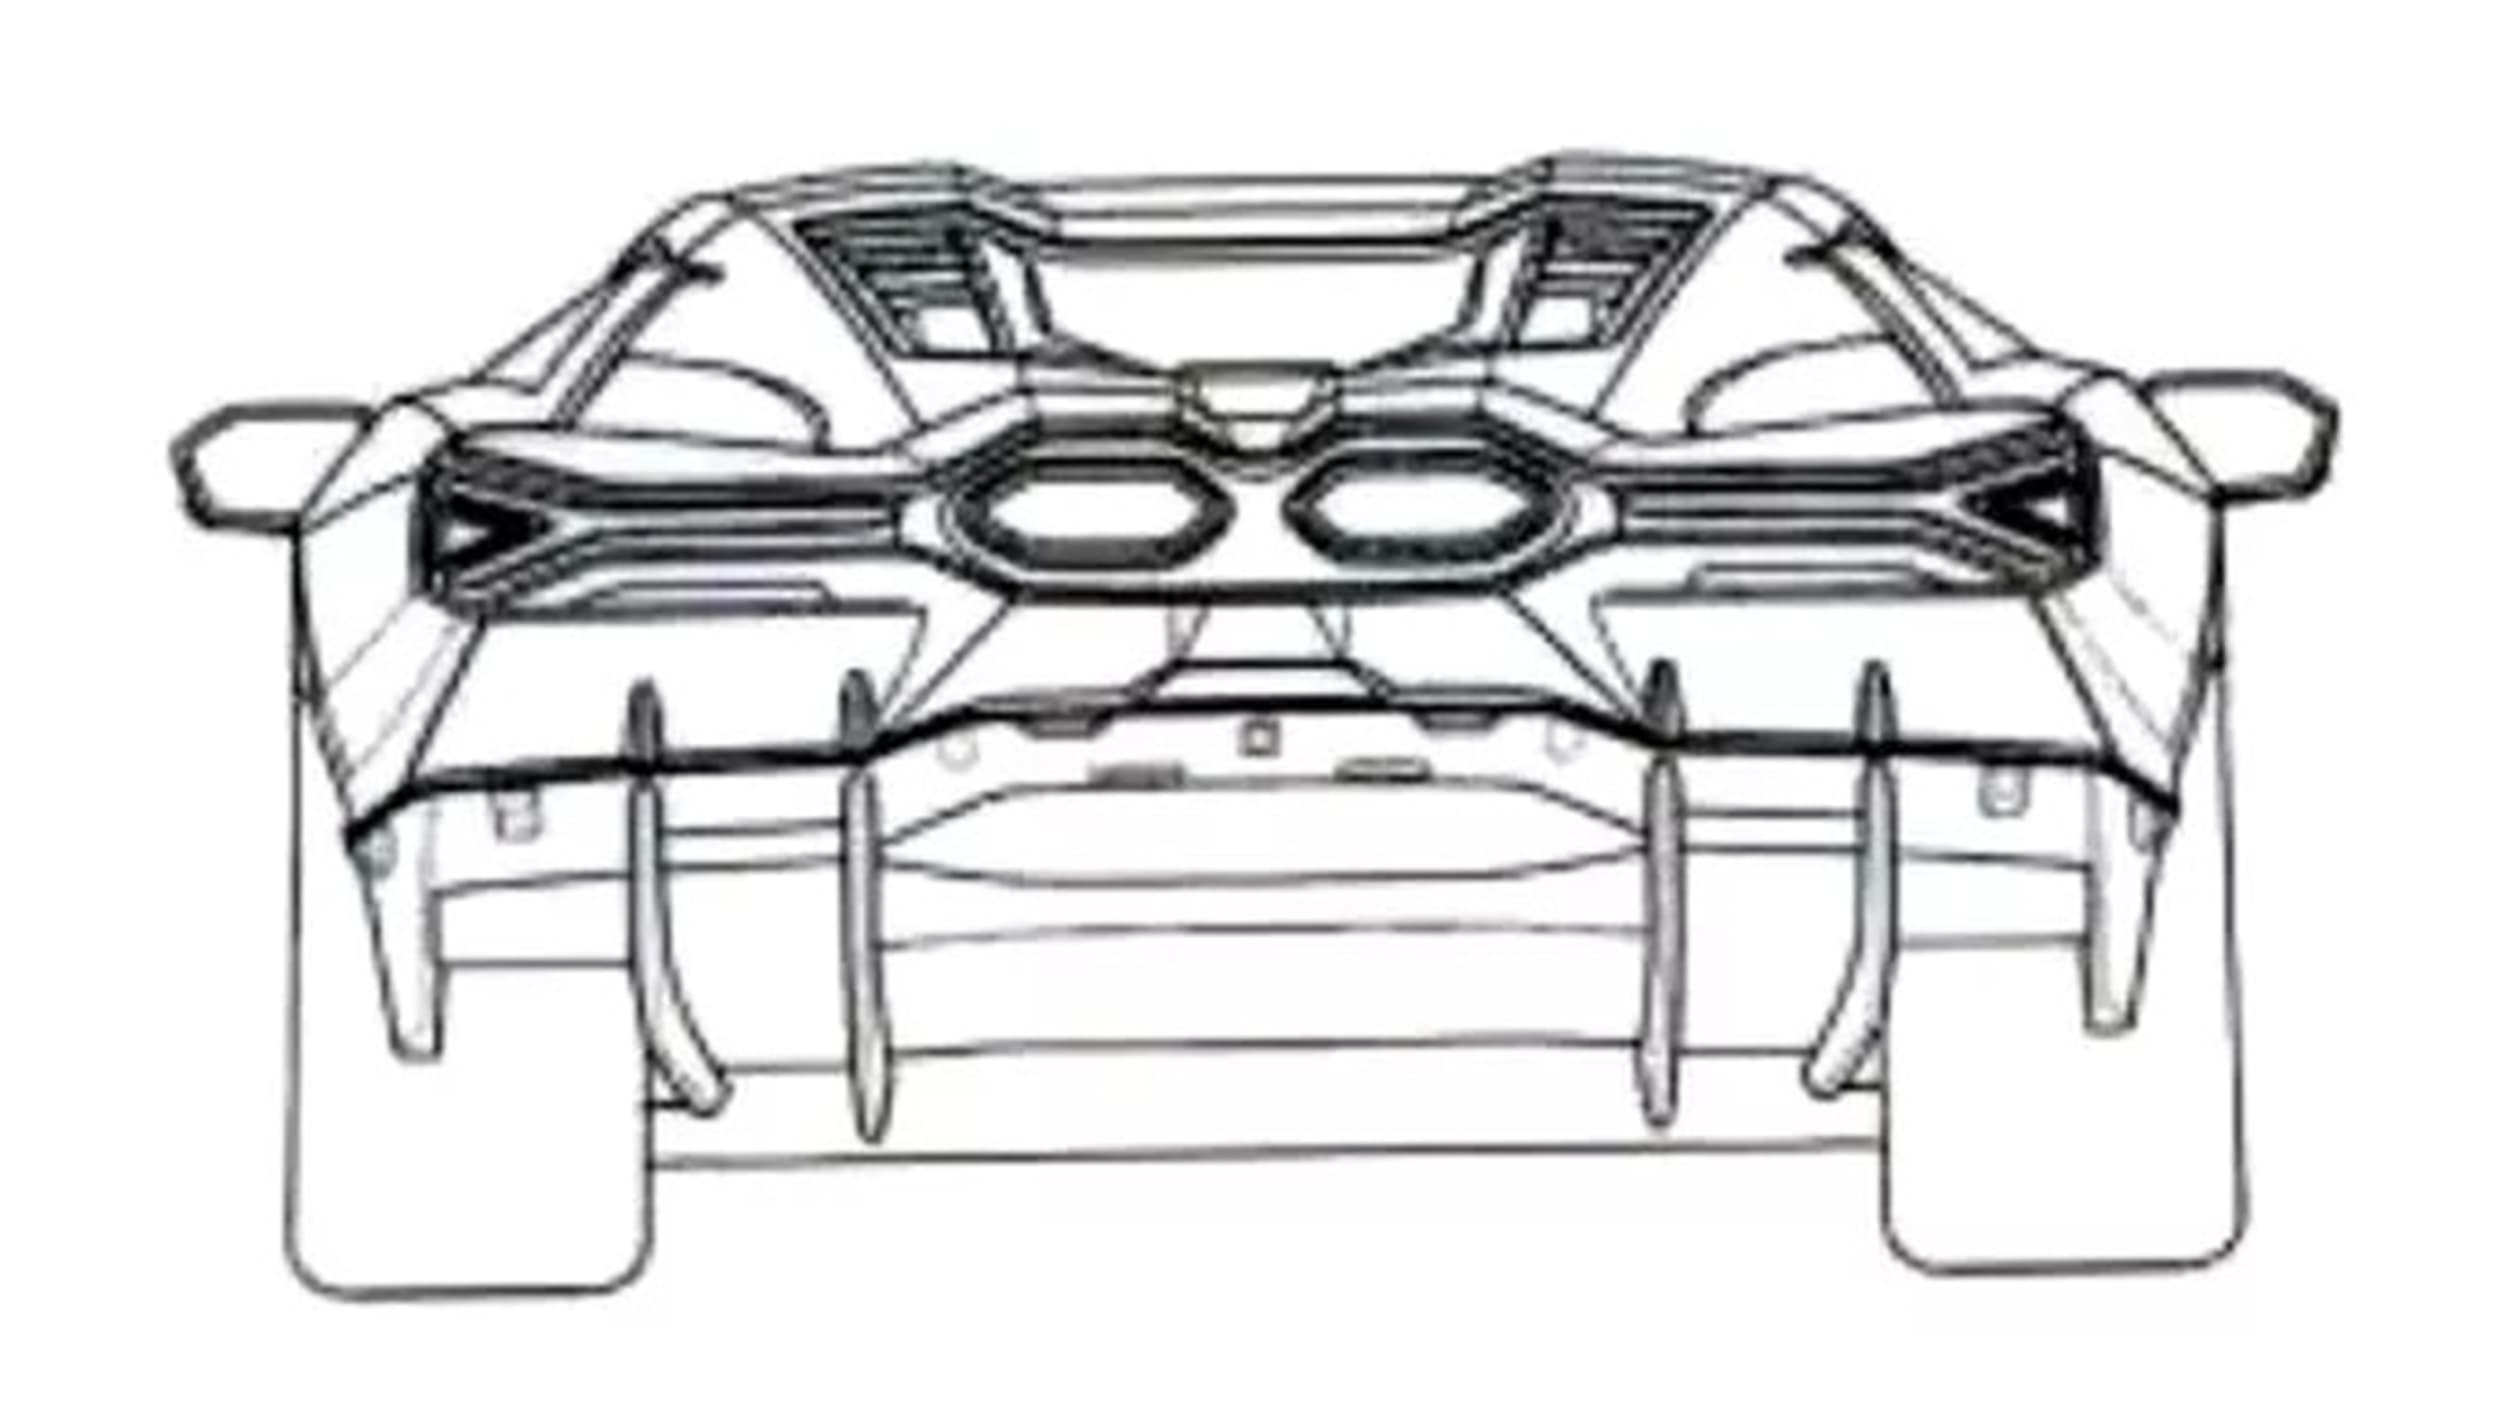 Lamborghini Aventador successor patent images - rear